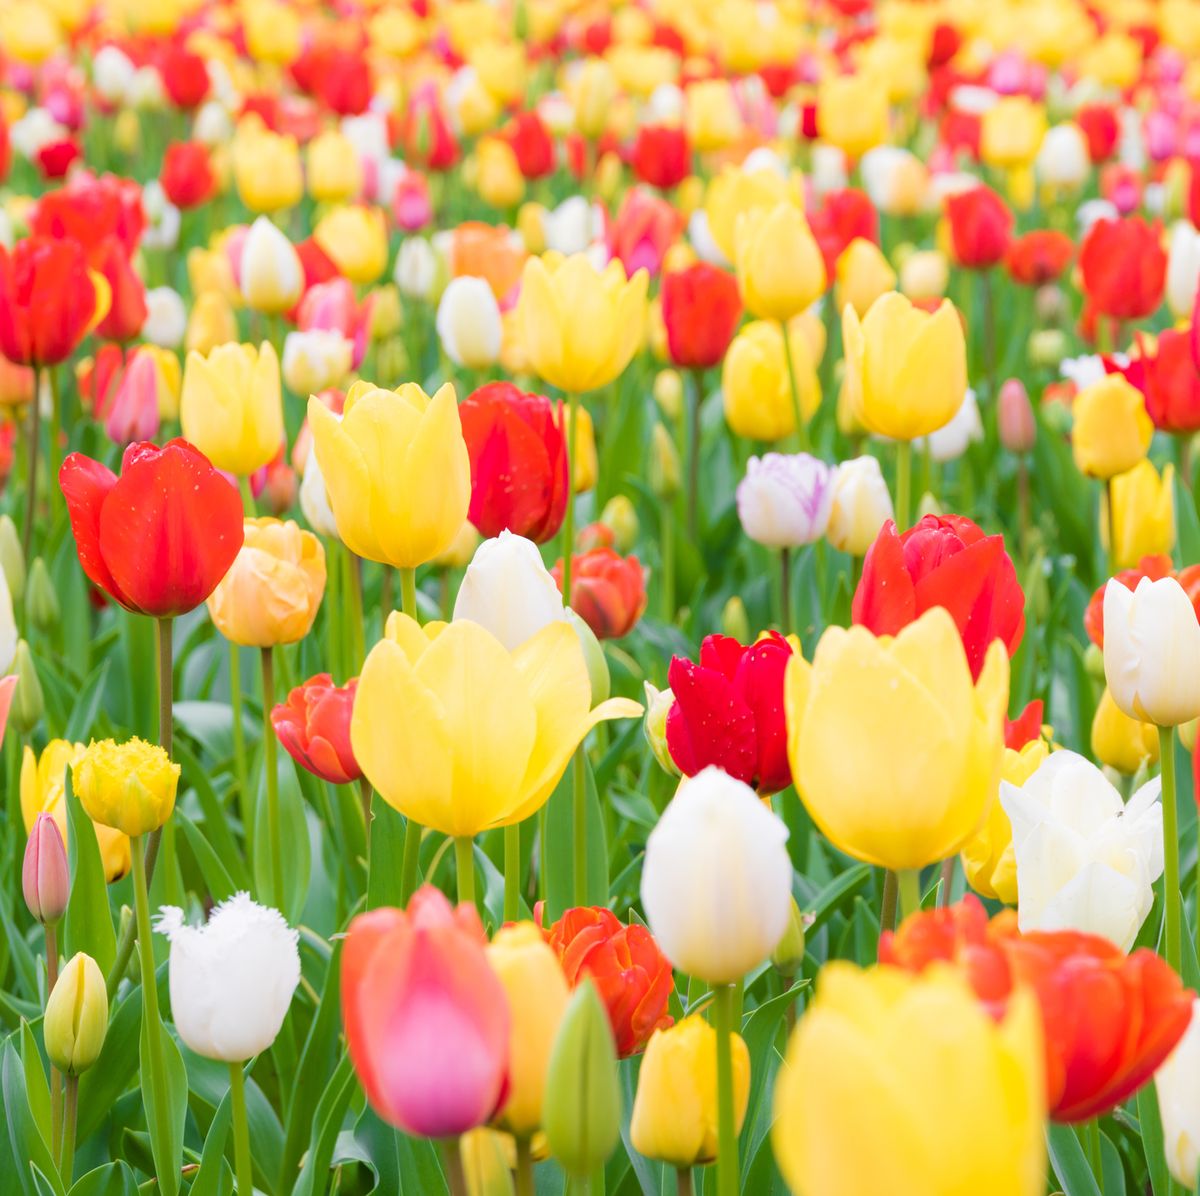 பயணத்தில் பார்வை Close-up-of-tulips-blooming-in-field-royalty-free-image-1584131603.jpg?crop=0.630xw:1.00xh;0